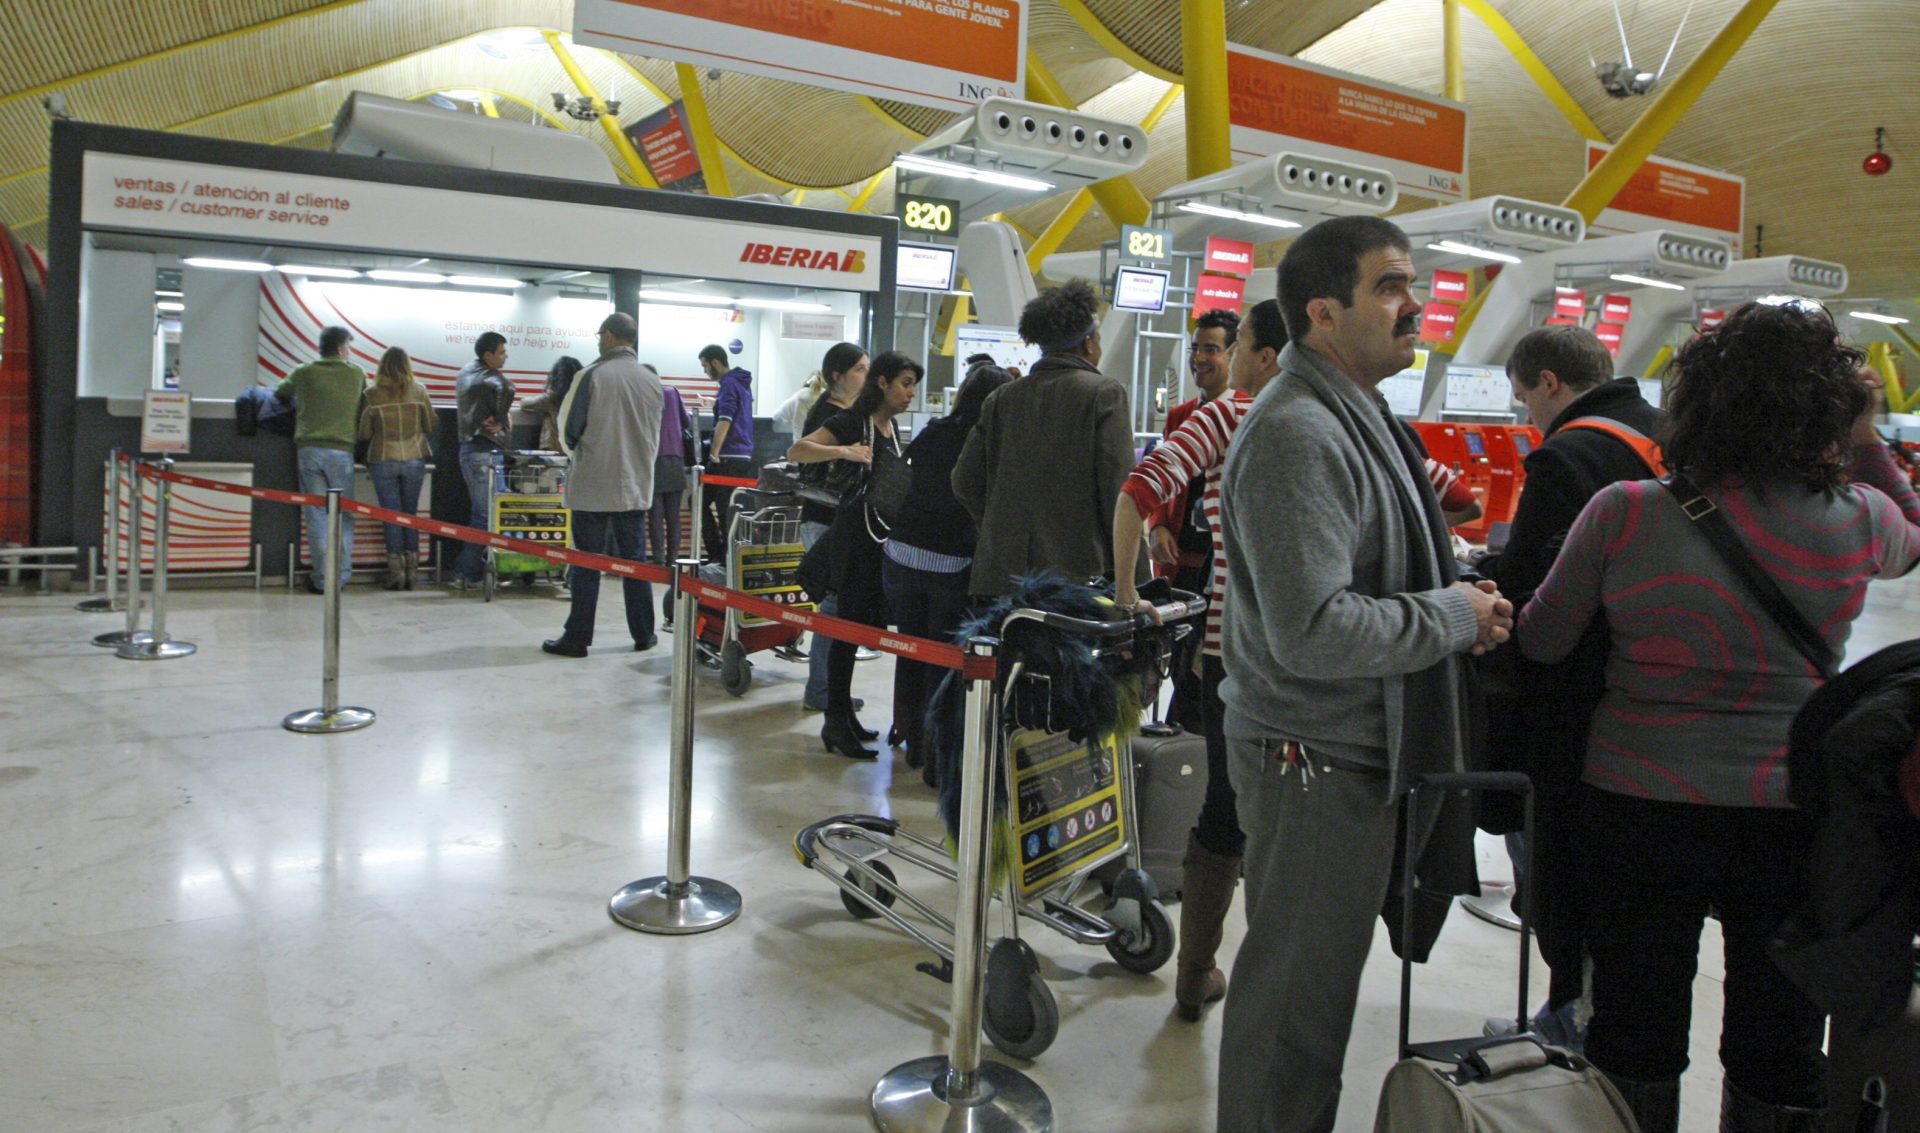 Viajeros guardan cola para efectuar reclamaciones en un mostrador del aeropuerto de Madrid-Barajas, en una imagen de archivo. EFE/Manuel H de León.